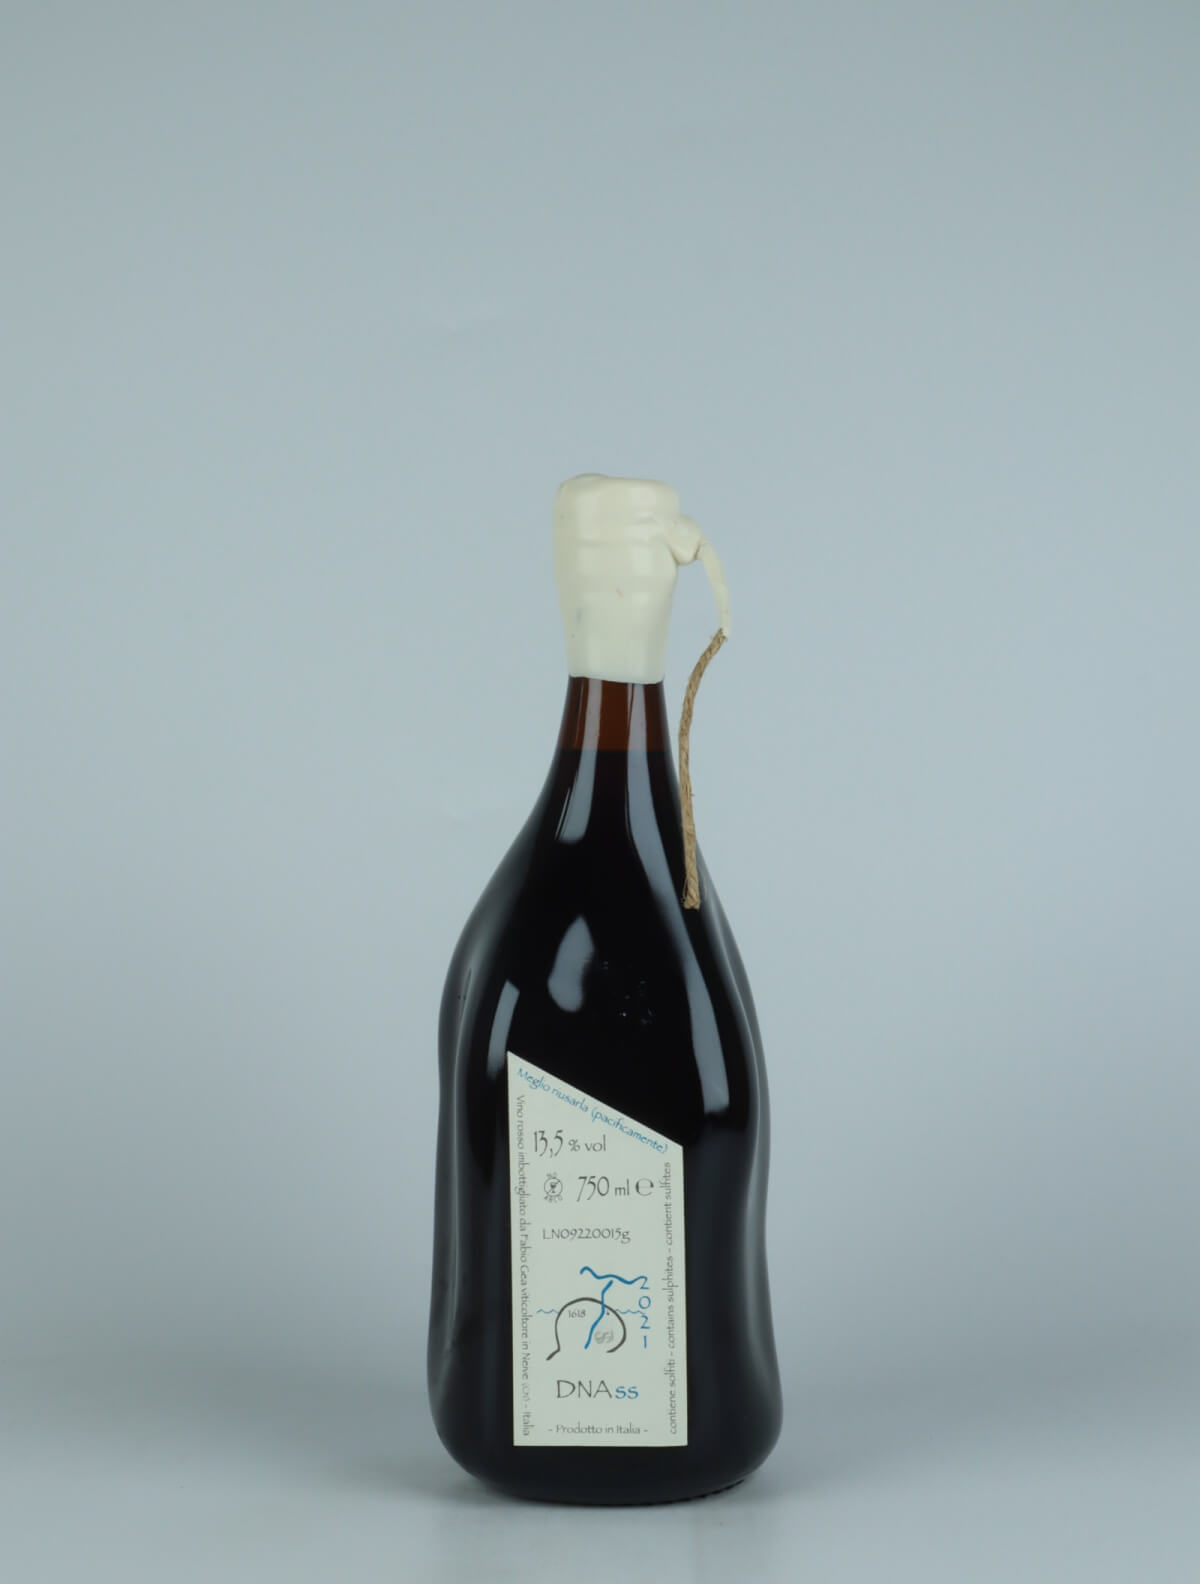 En flaske 2021 DNAss Rødvin fra Fabio Gea, Piemonte i Italien